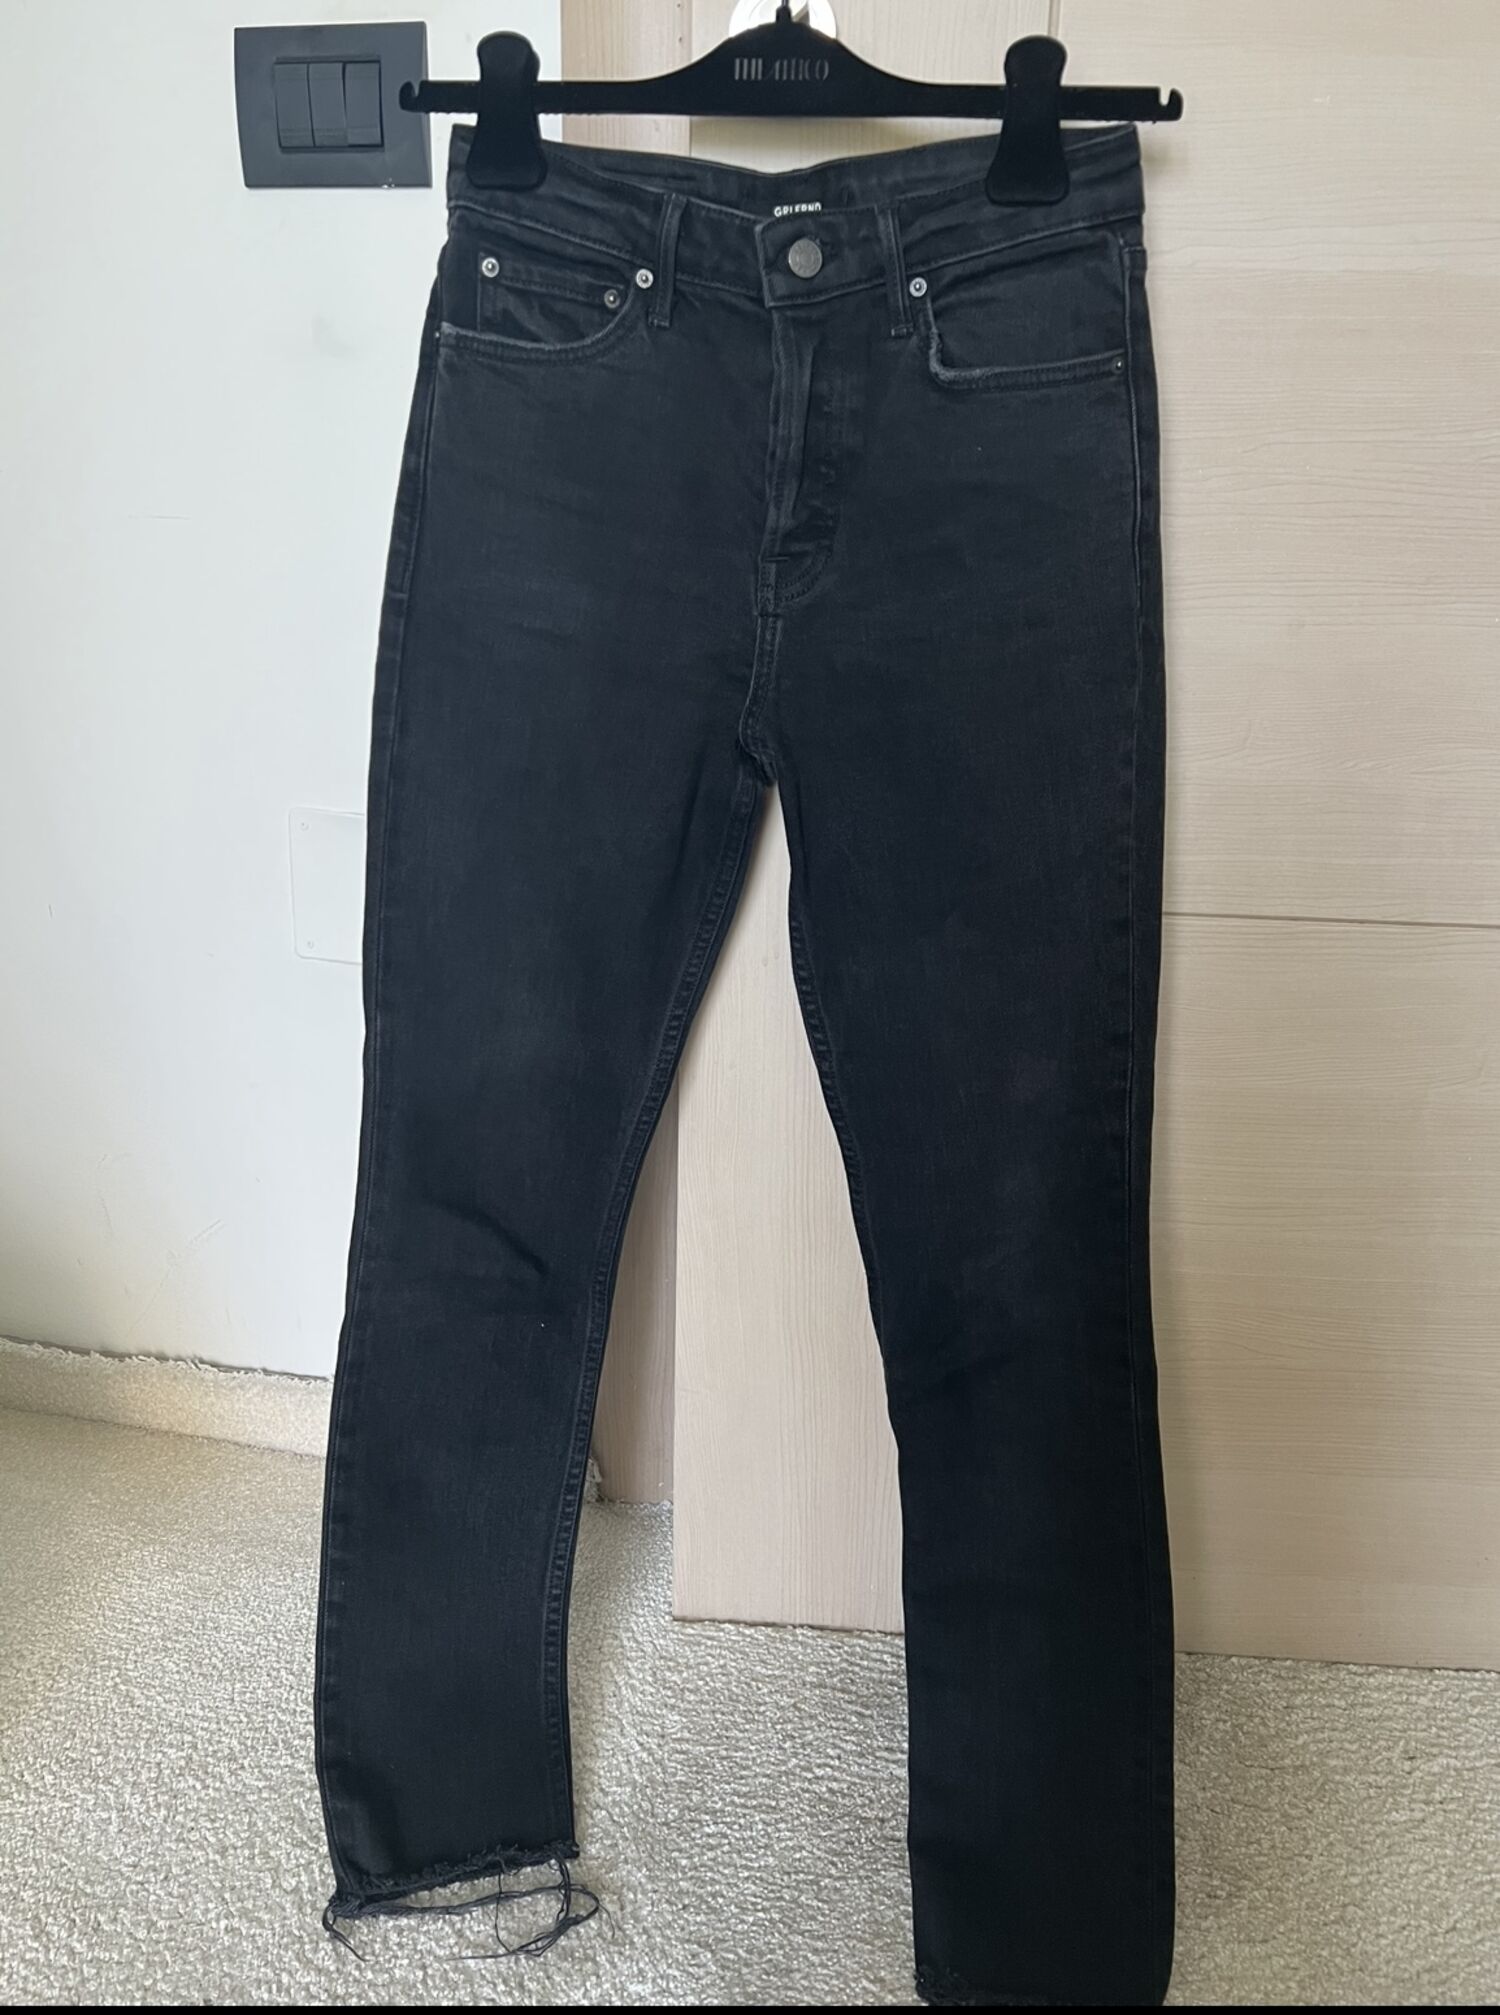 Skinny Jeans Grlfrnd, buy pre-owned at 90 EUR